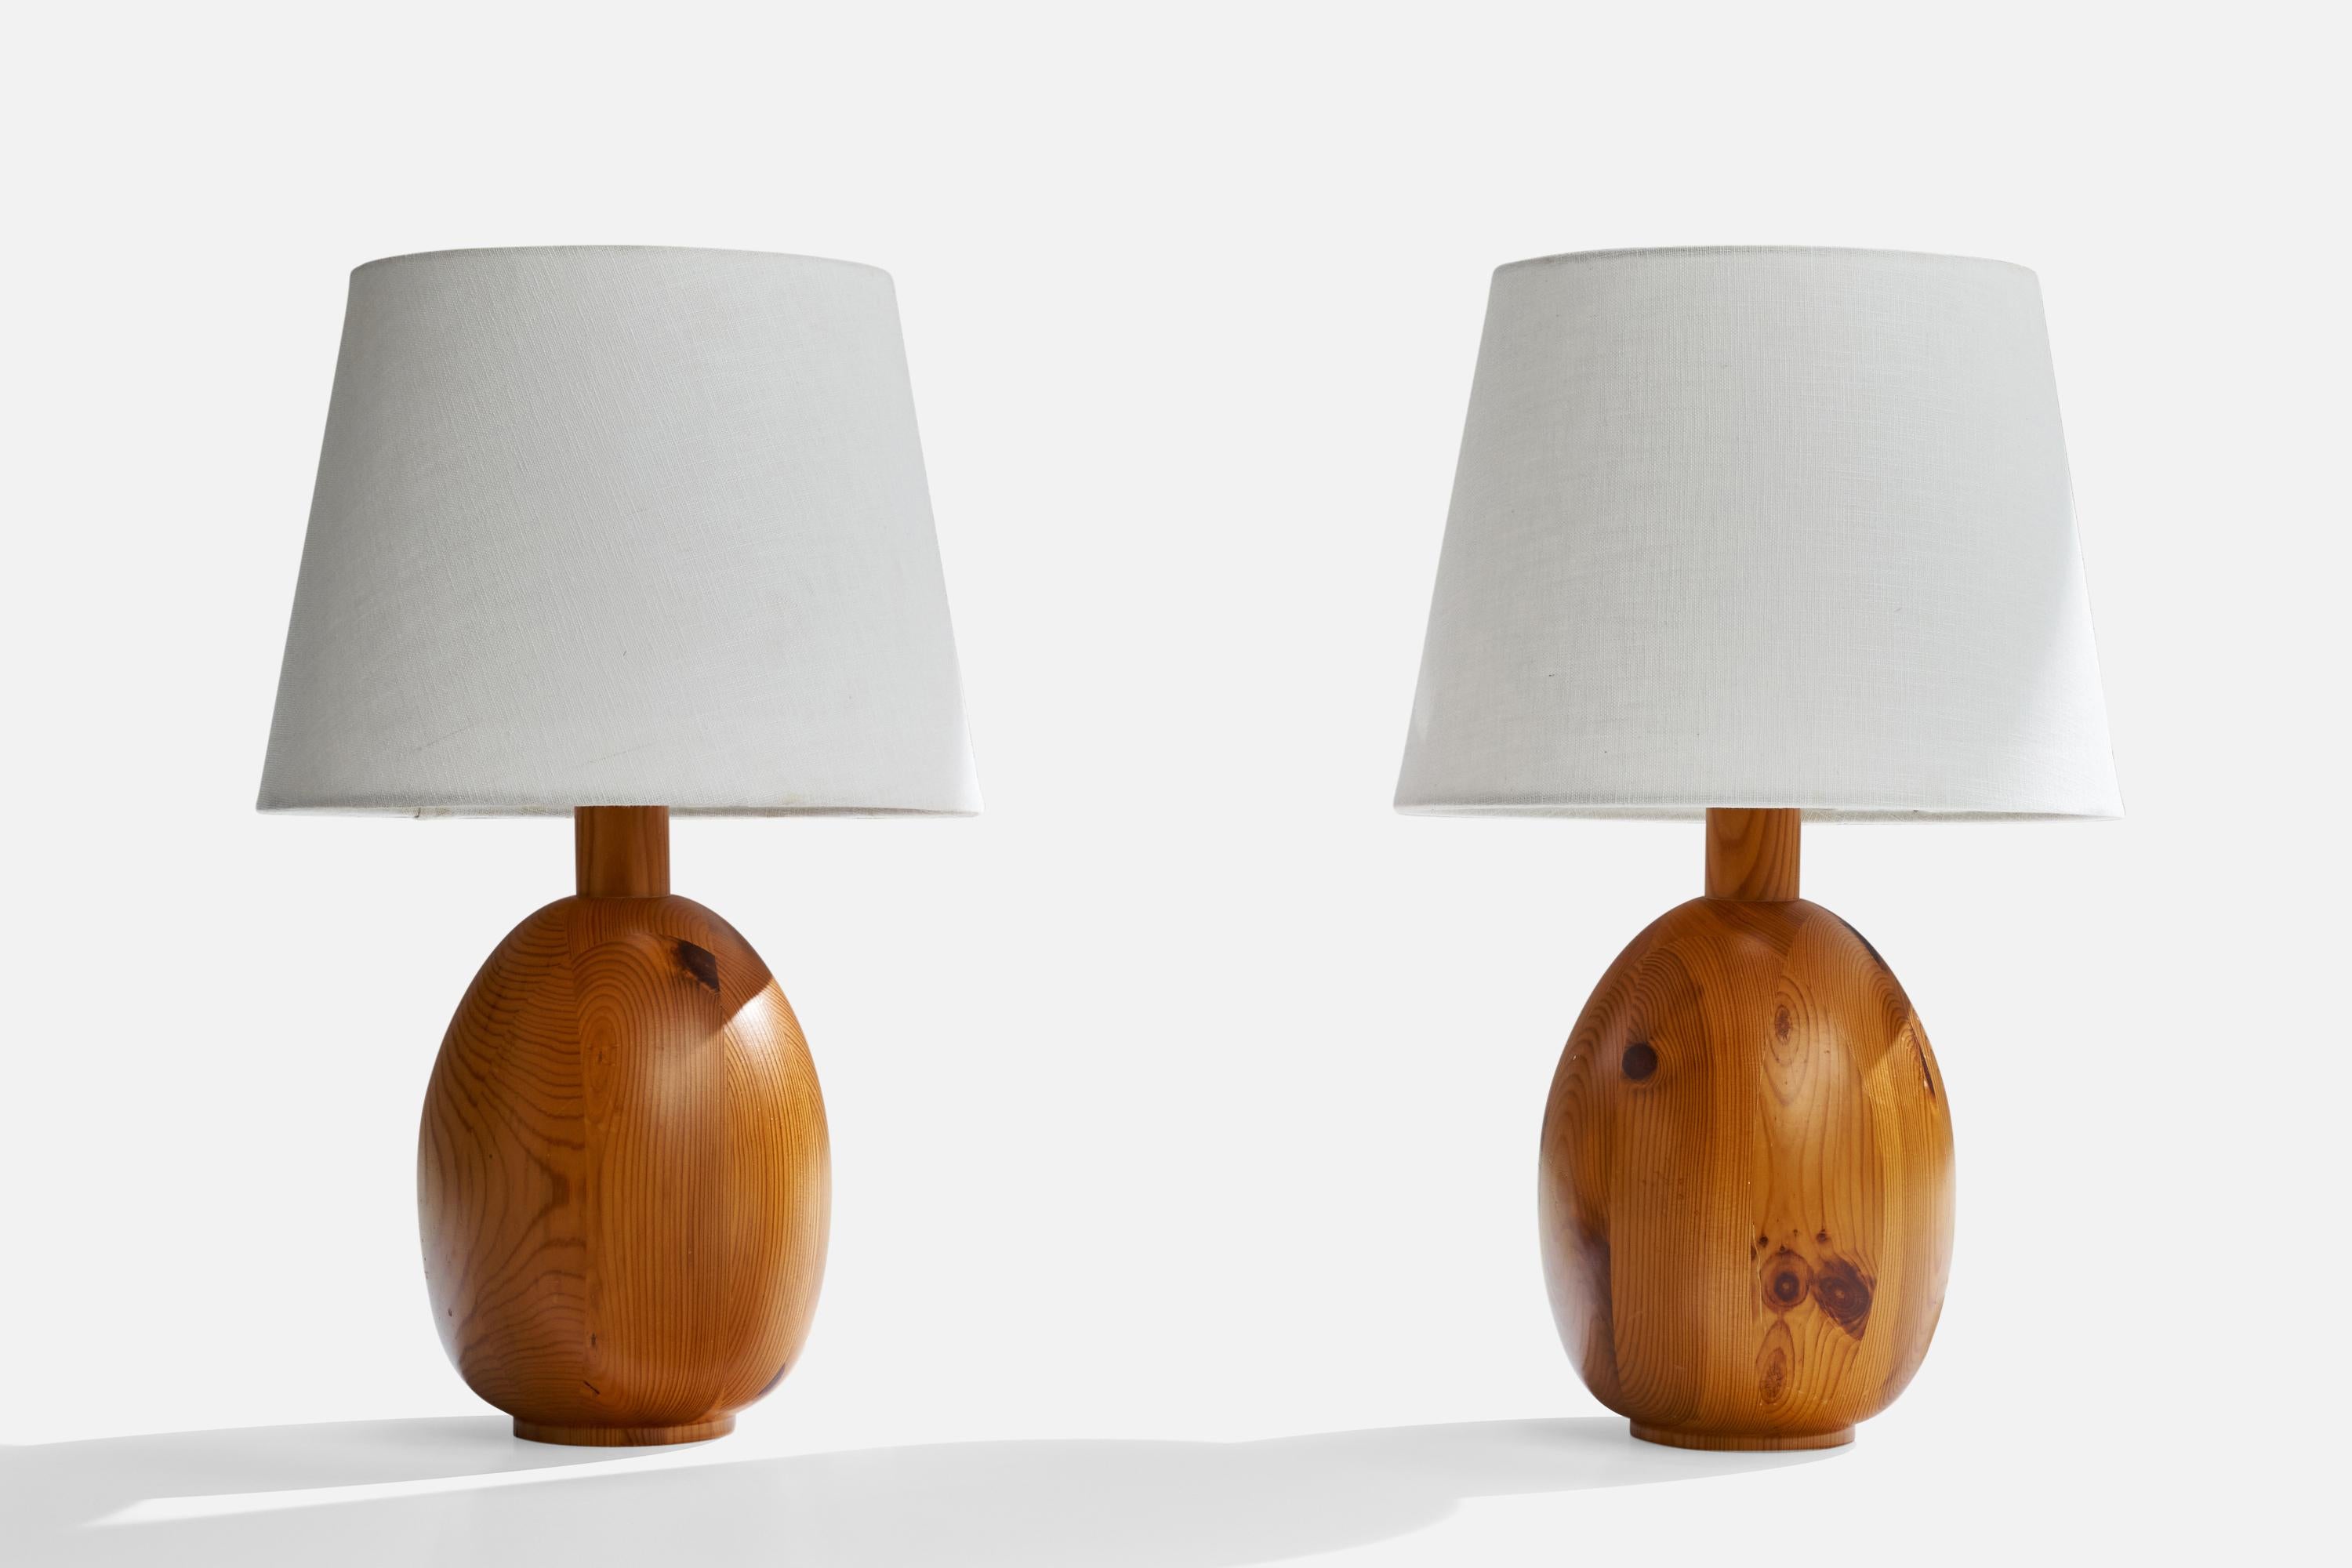 Paire de lampes de table en pin conçues et produites par Markslöjd, Suède, années 1970.

Dimensions de la lampe (pouces) : 14